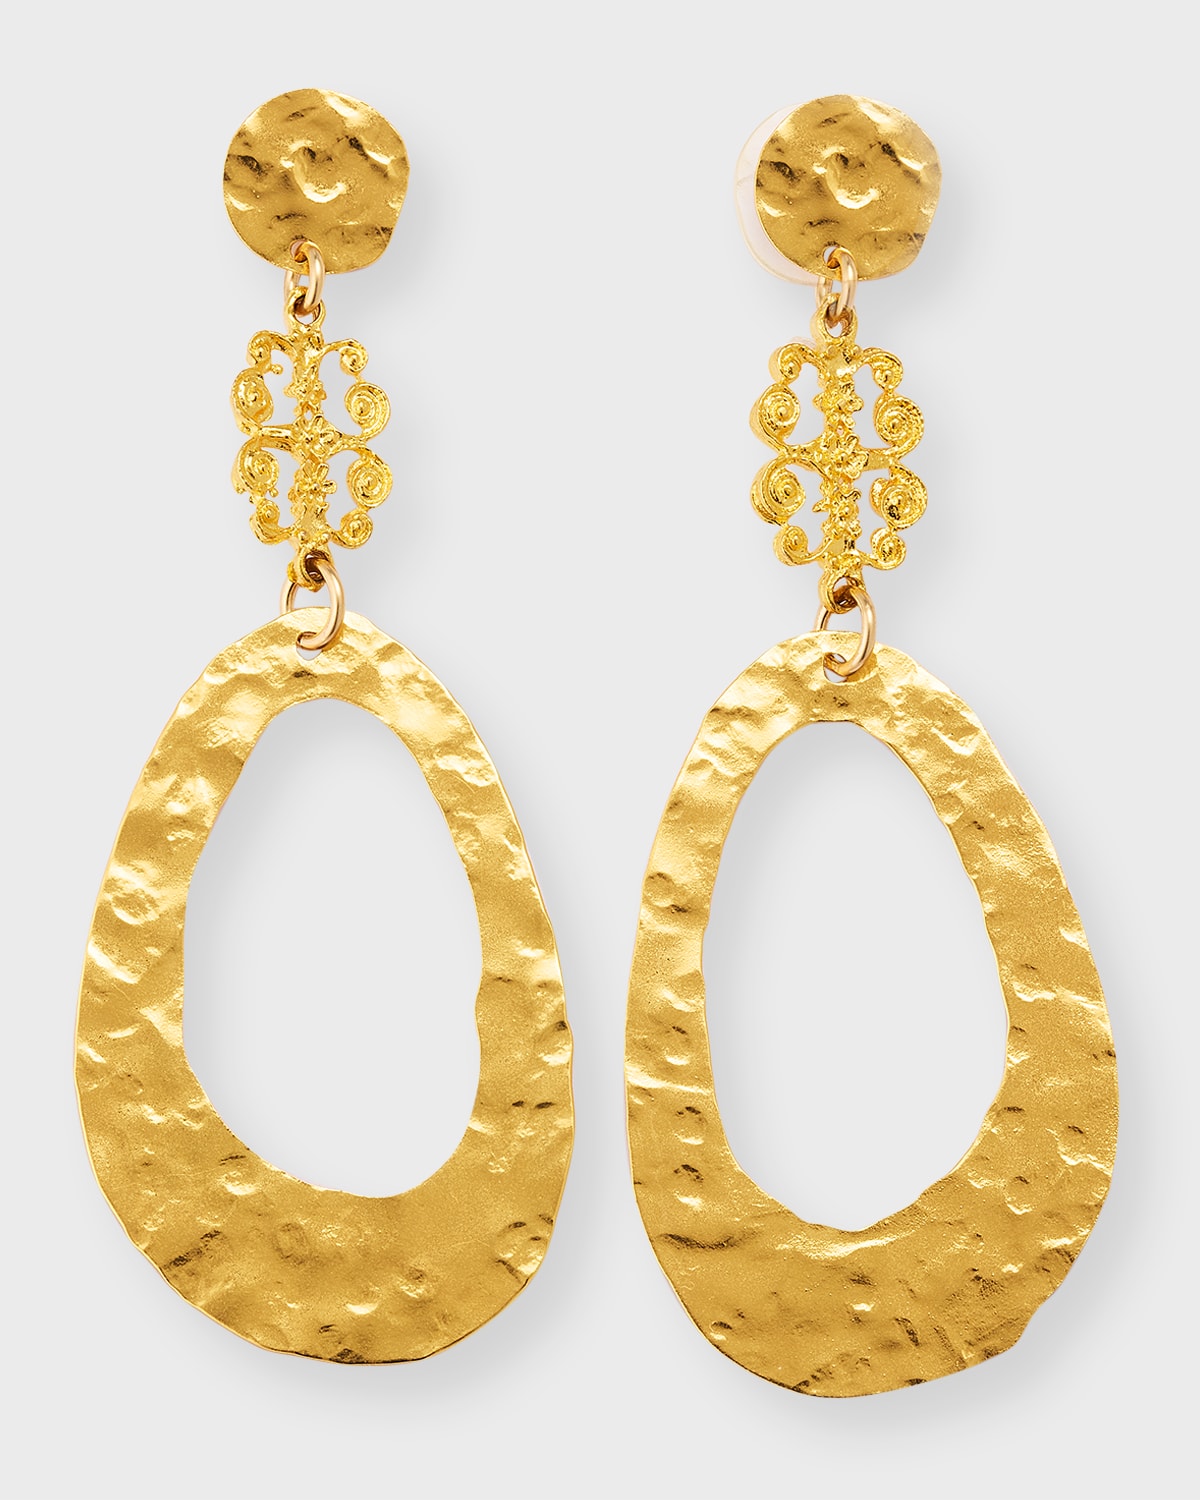 Devon Leigh 18k Gold-plated Teardrop Post Earrings